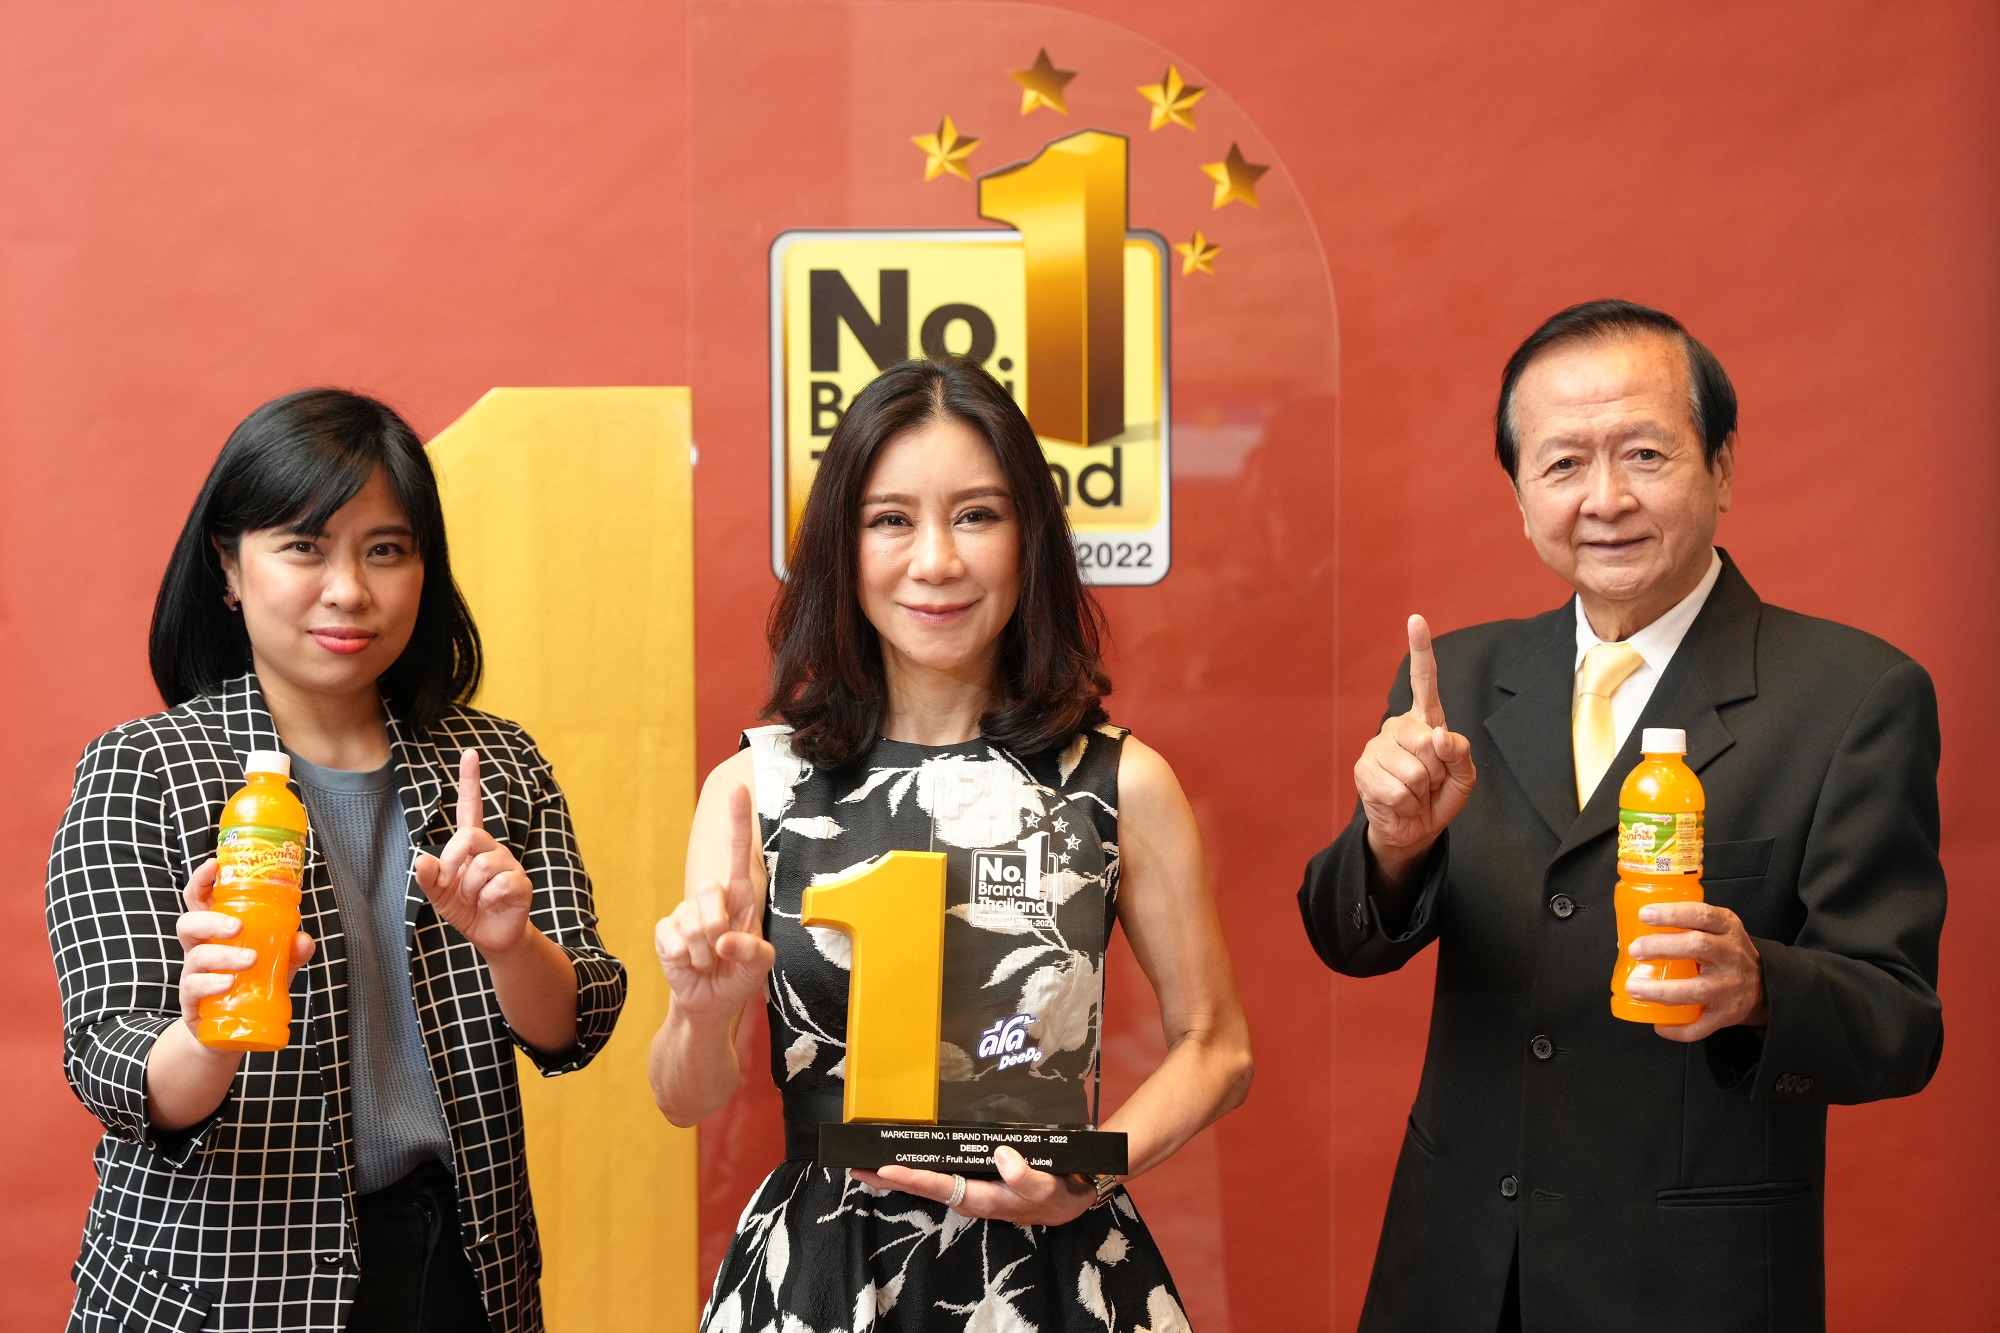 “ดีโด้” ตอกย้ำความเป็นที่ 1 ร่วมรับรางวัล No.1 Brand Thailand 2021-2022  จาก Marketeer พ่วงแชมป์ยอดขายสูงสุด ต่อเนื่องปีที่ 4